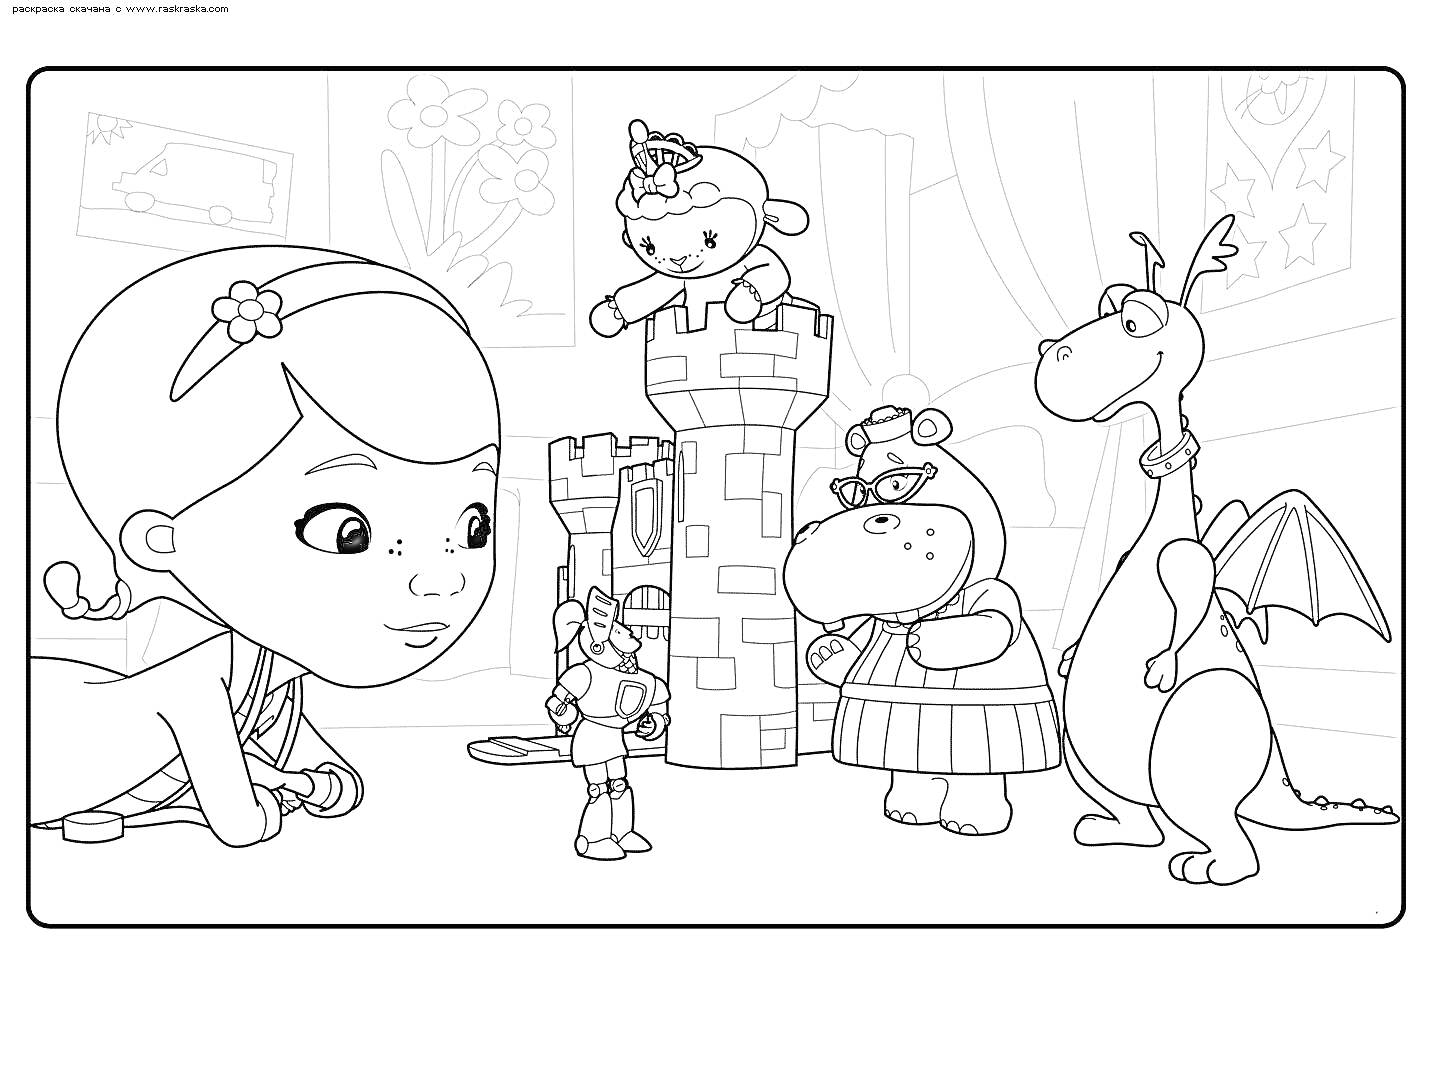 Доктор Плюшева с друзьями: принцесса Ягнёнок, хиппопотам в платье, дракон с крыльями и мальчик-рыцарь возле замка